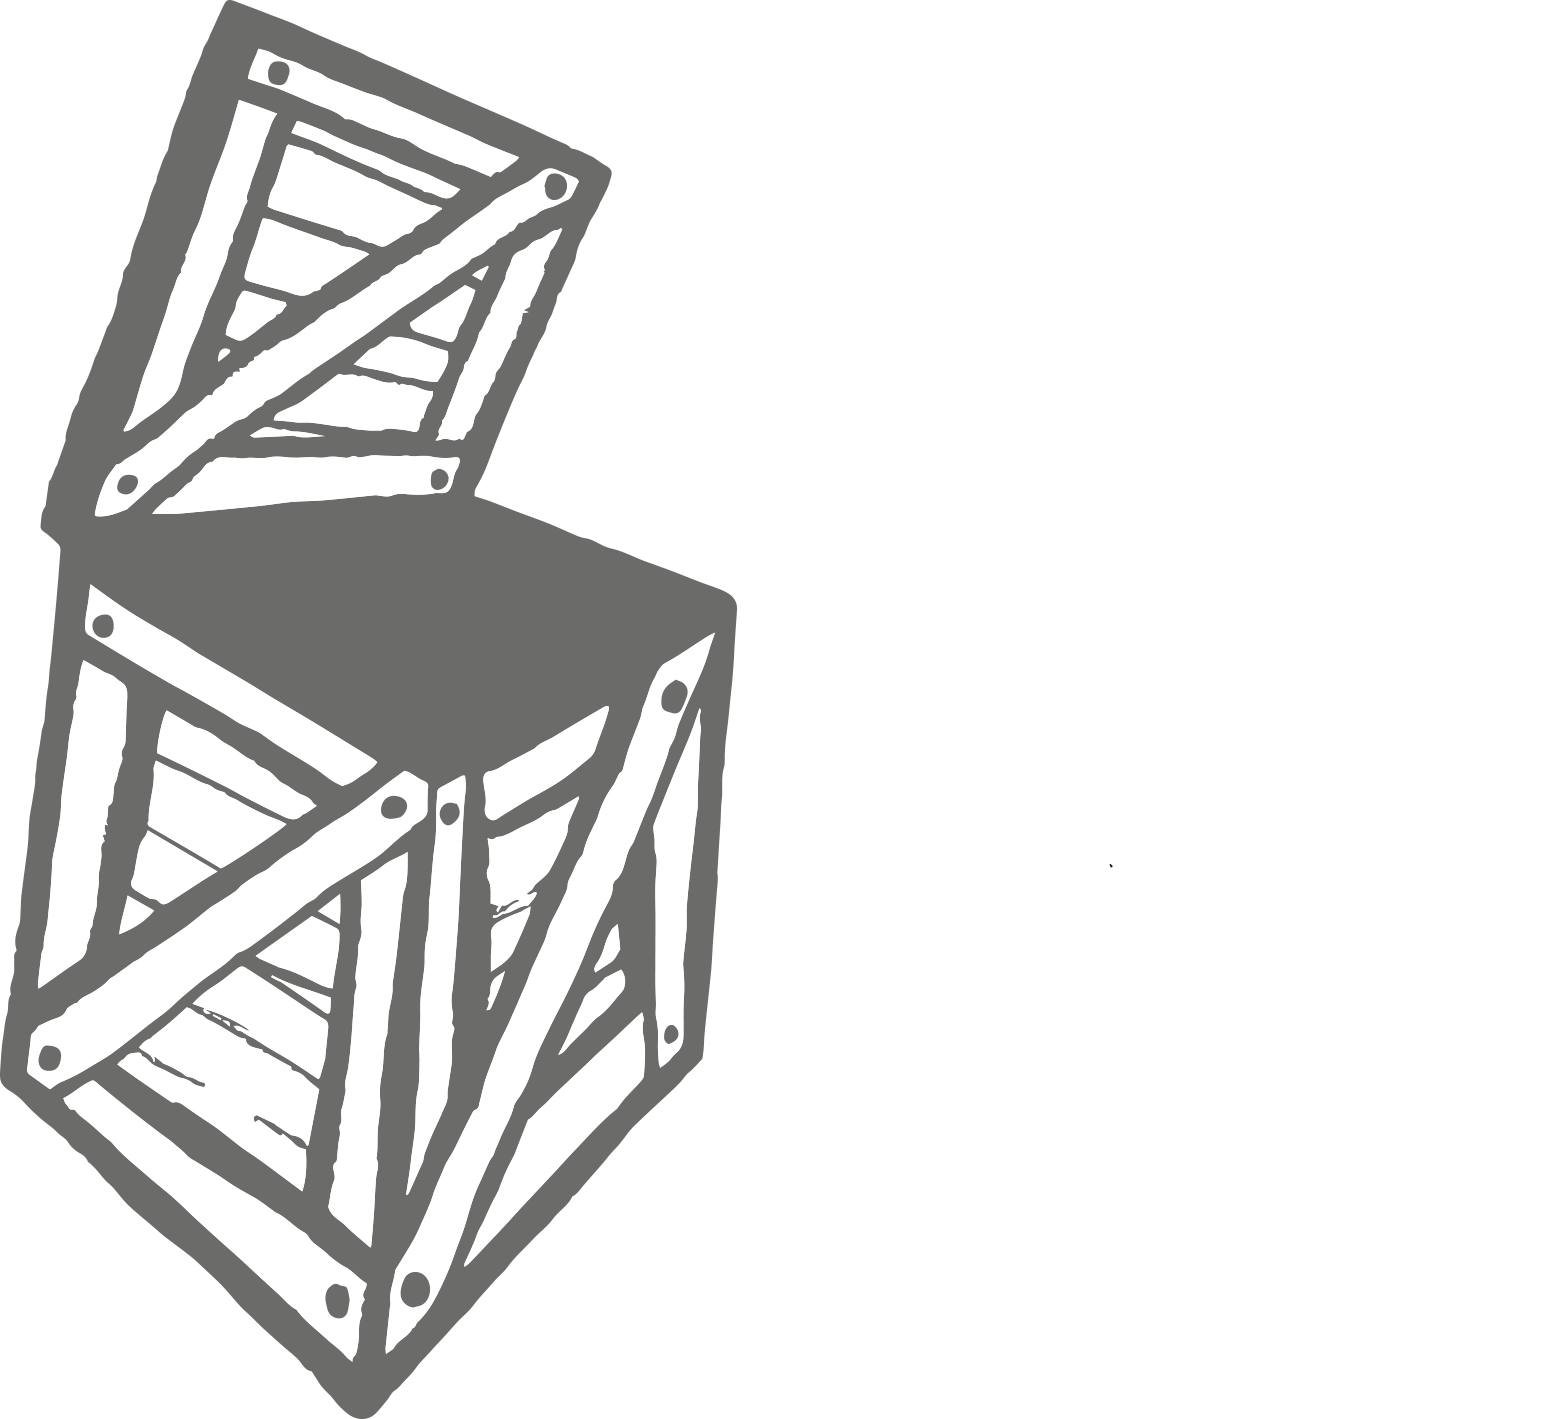 WoodBoxStudio